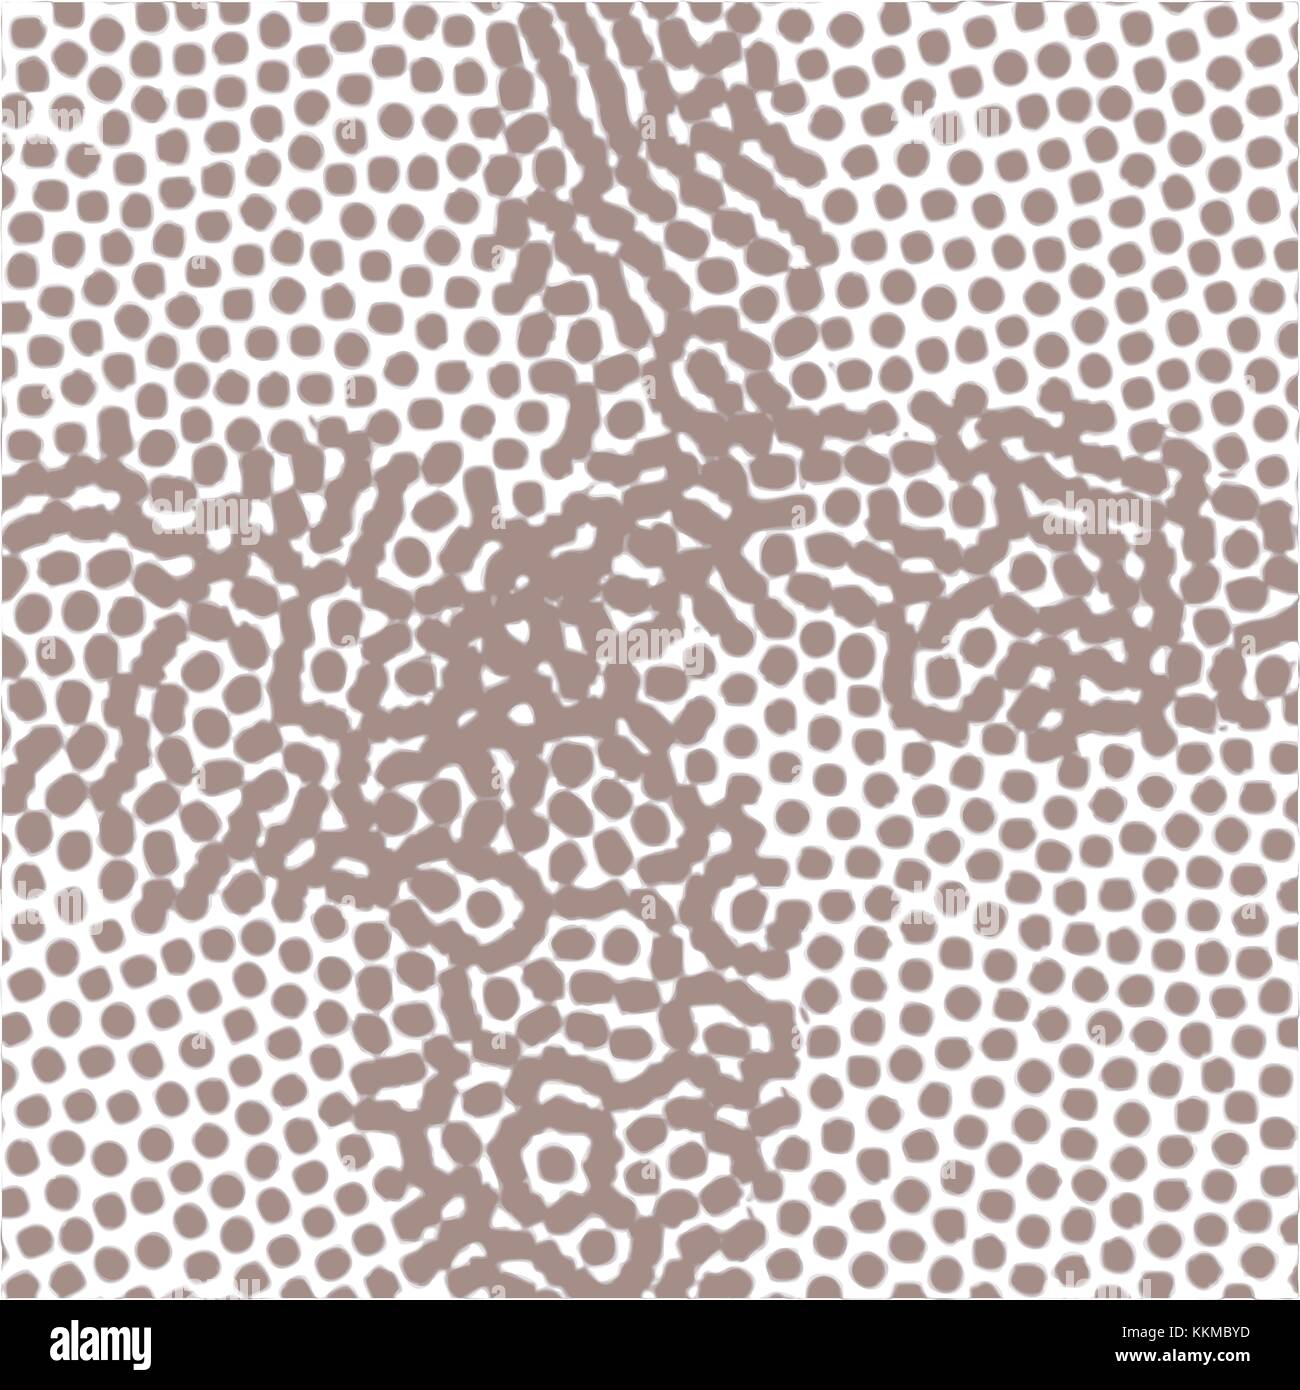 Braun aquarell Dot Pattern in Form von Clover treibt auf weißem Hintergrund, Vector Illustration Stock Vektor